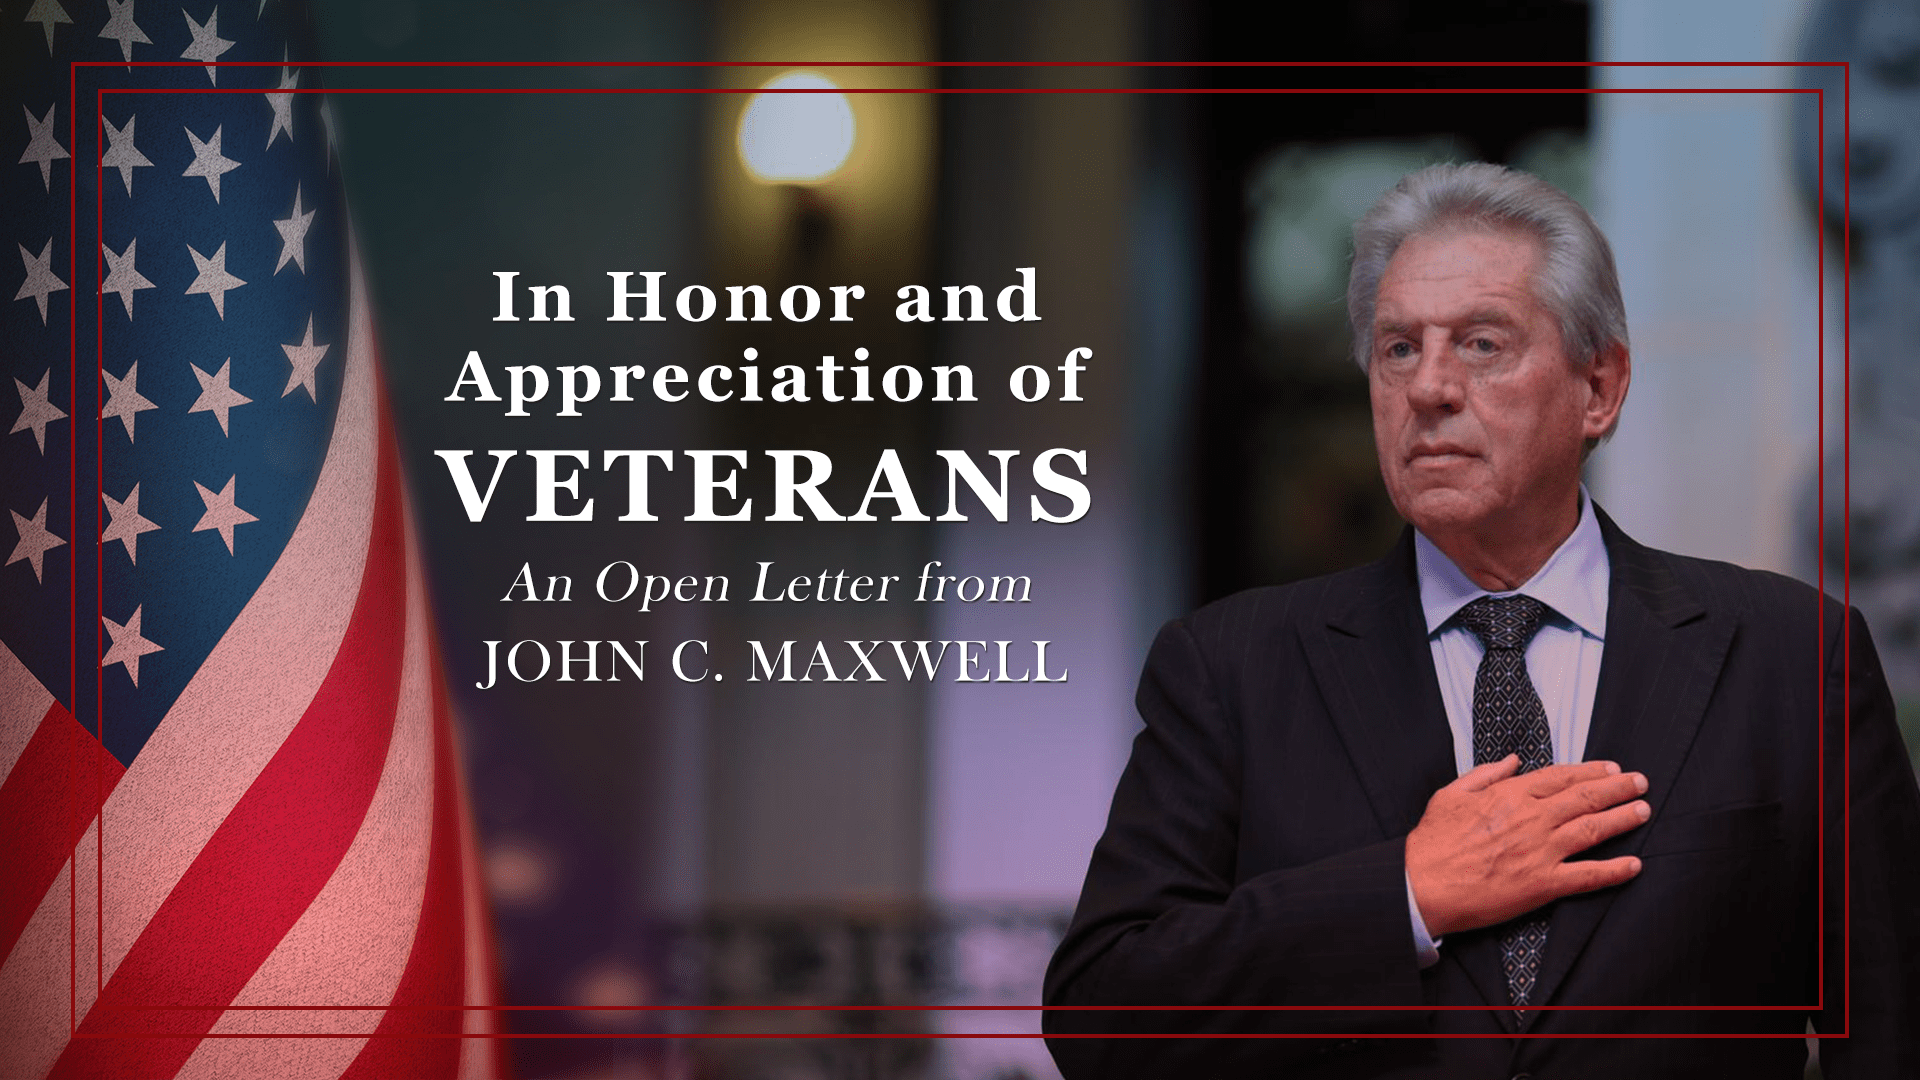 john maxwell open letter veterans header image